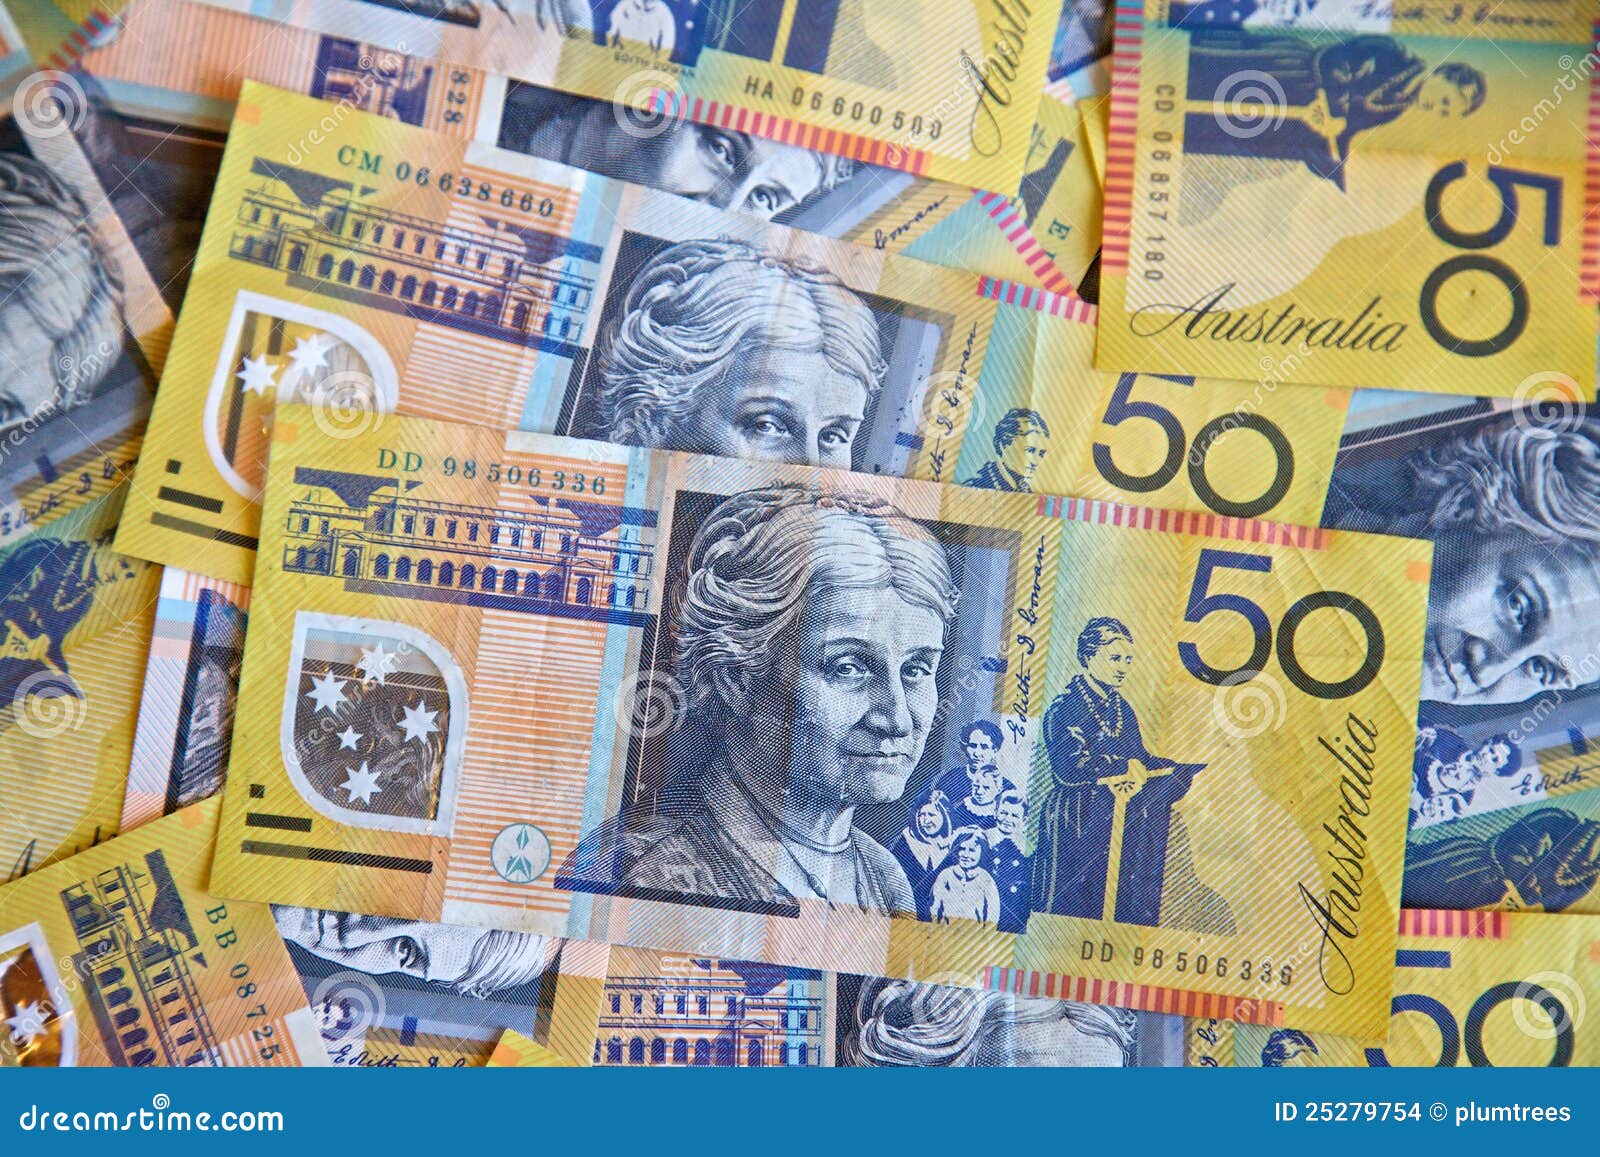 澳大利亚元钞票 库存图片. 图片 包括有 替换, 货币, 空白, 澳大利亚, 银行, 查出, 背包, 横幅提供资金的 - 92150993